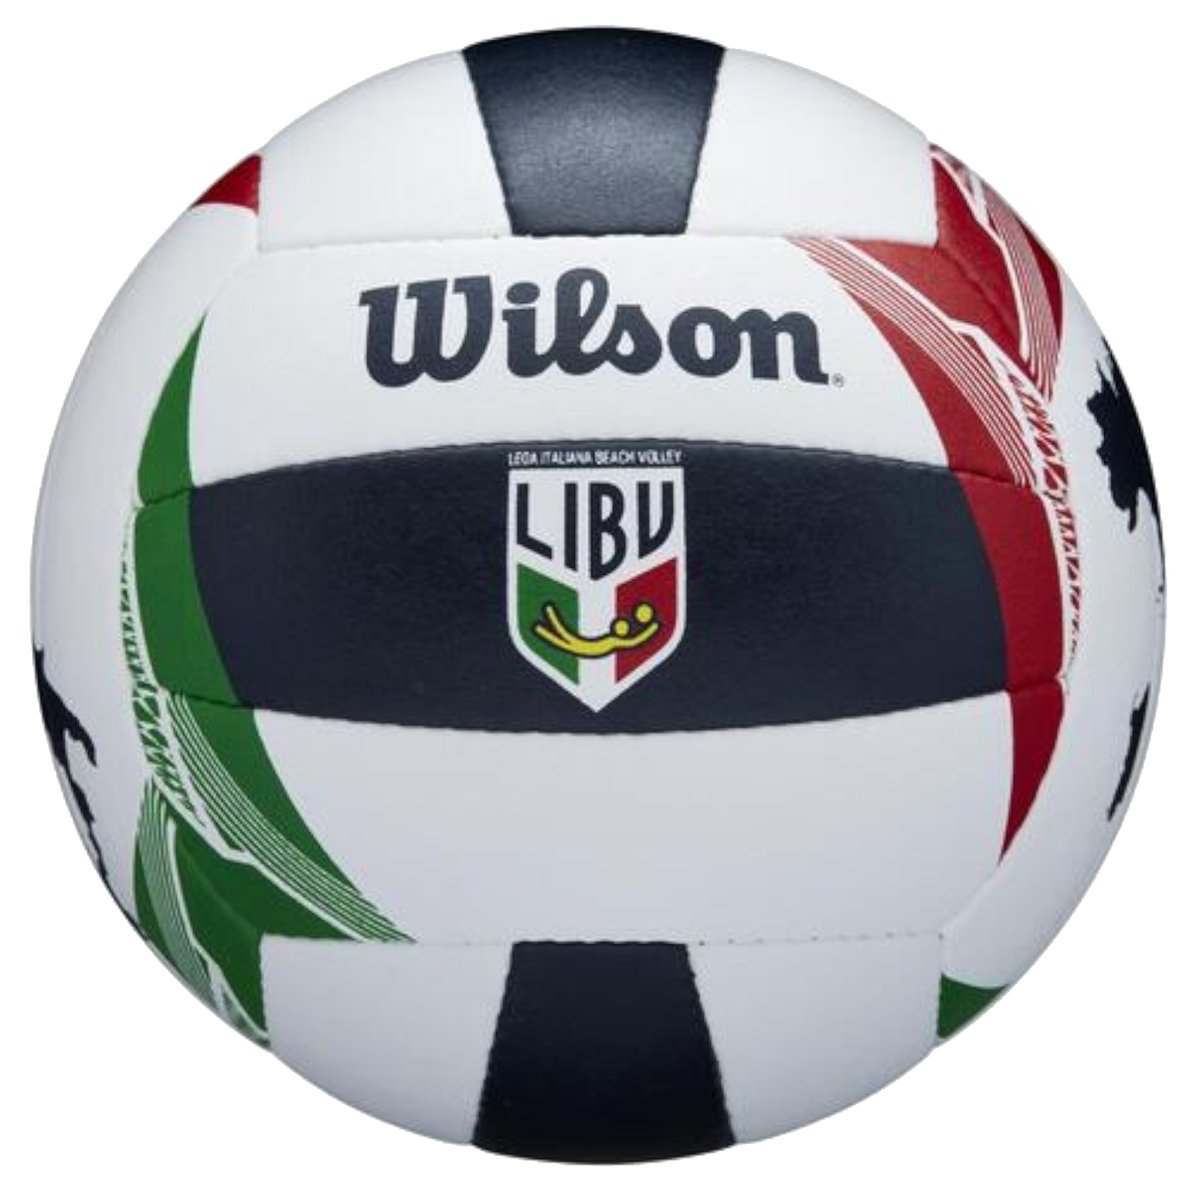 Wilson Italian League Official Game Ball WTH6114XB, unisex, piłki do siatkówki, Białe